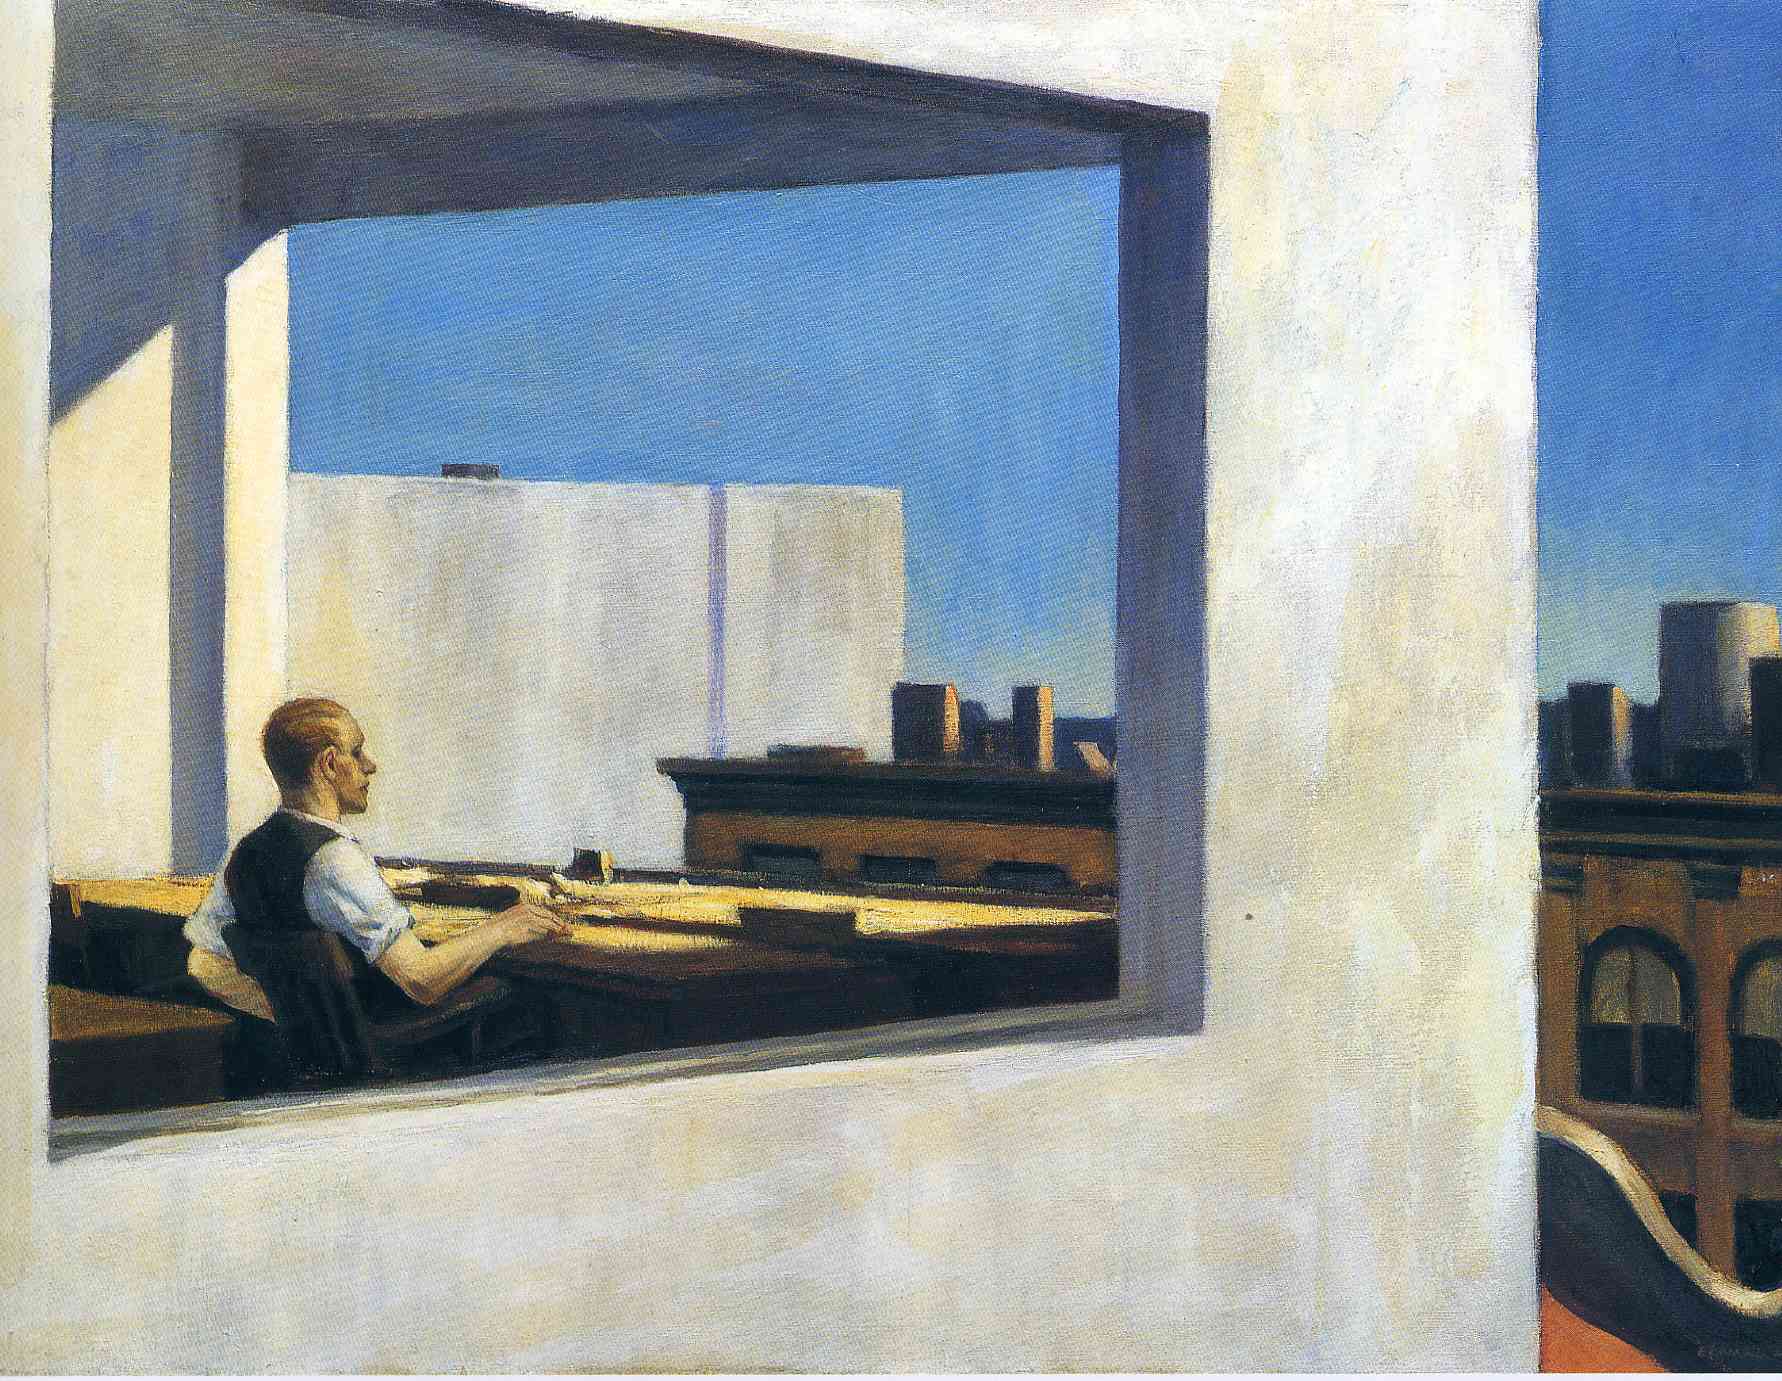 Biuro w Małym Mieście by Edward Hopper - 1953 - 71.1 x 101.6 cm 